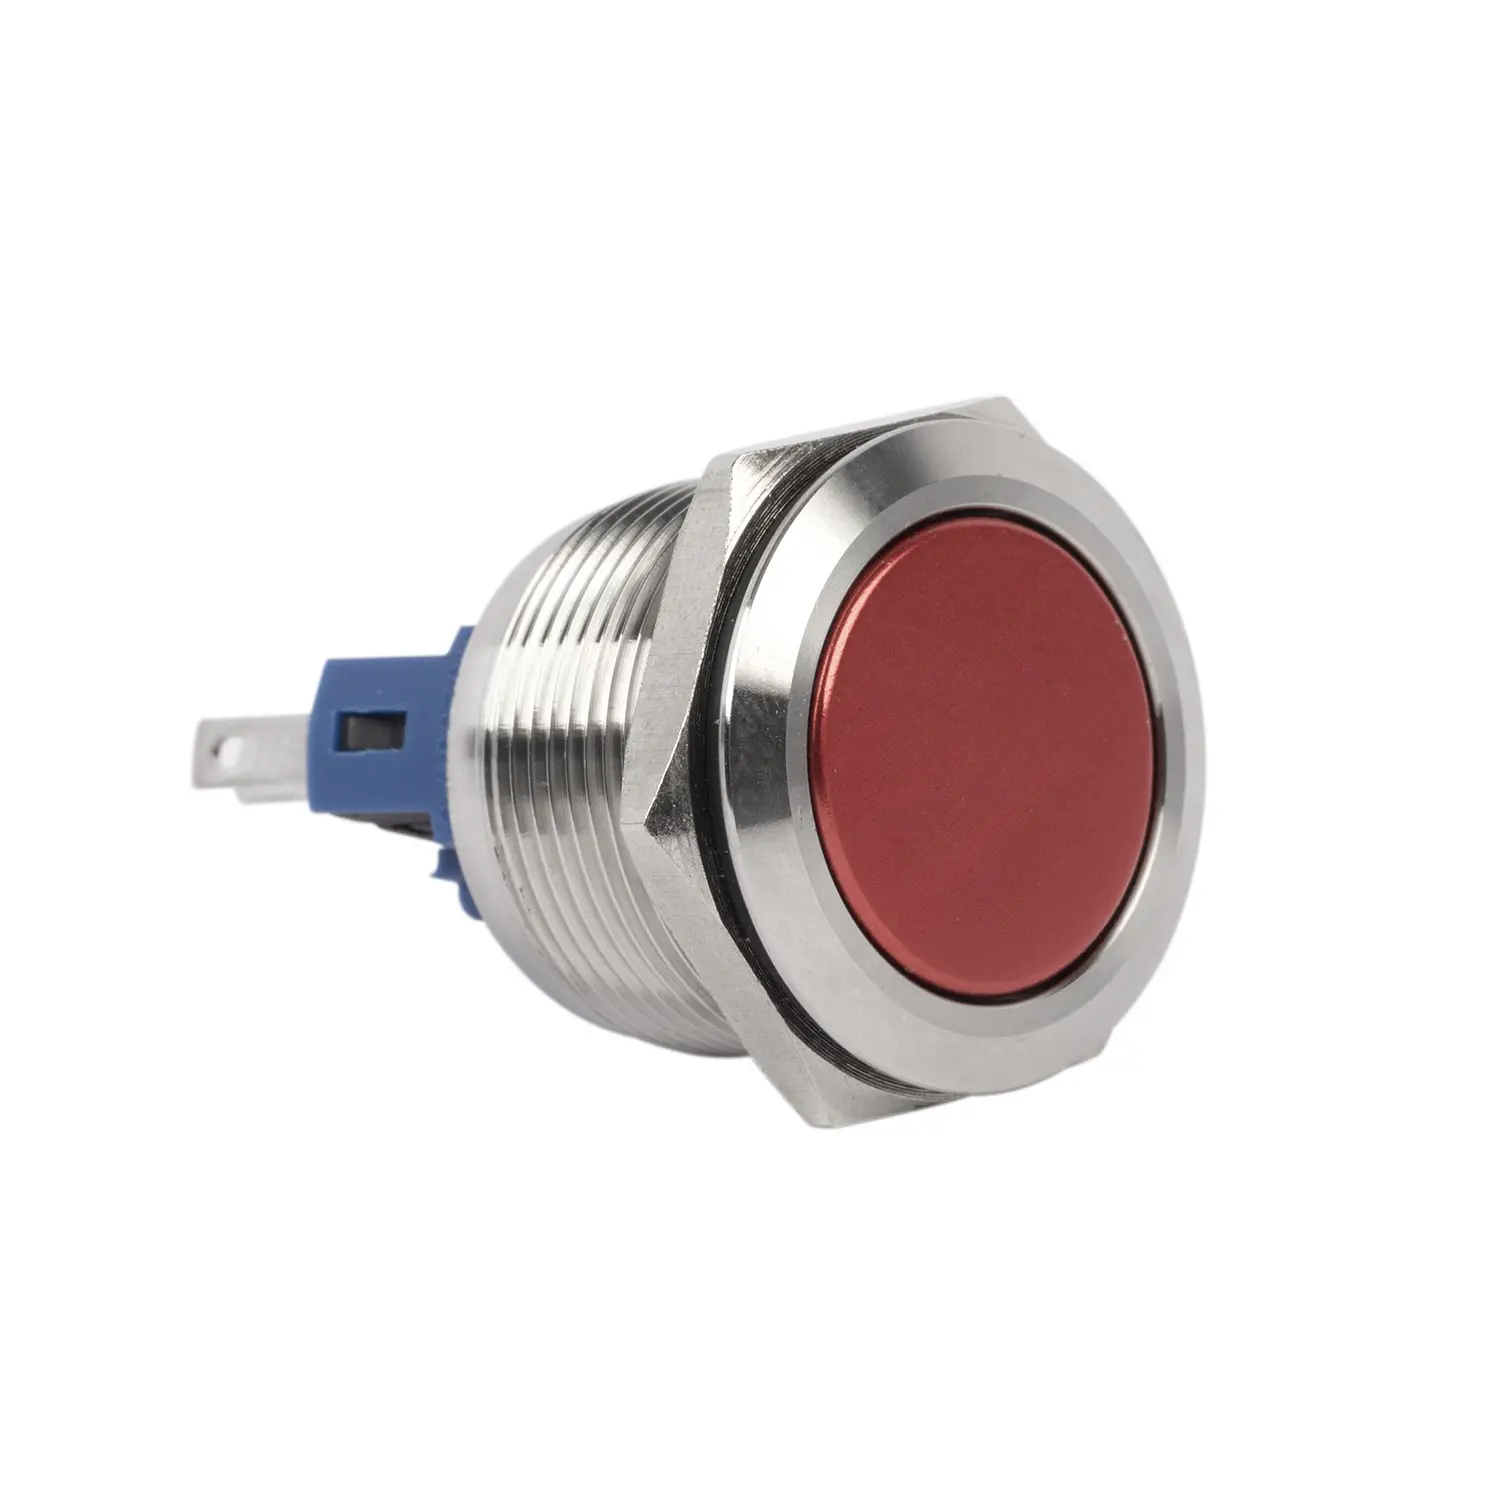 CQC 22mm interruttore a pulsante momentaneo diametro materiale metallico 1 pulsante rosso a testa piatta normalmente aperto